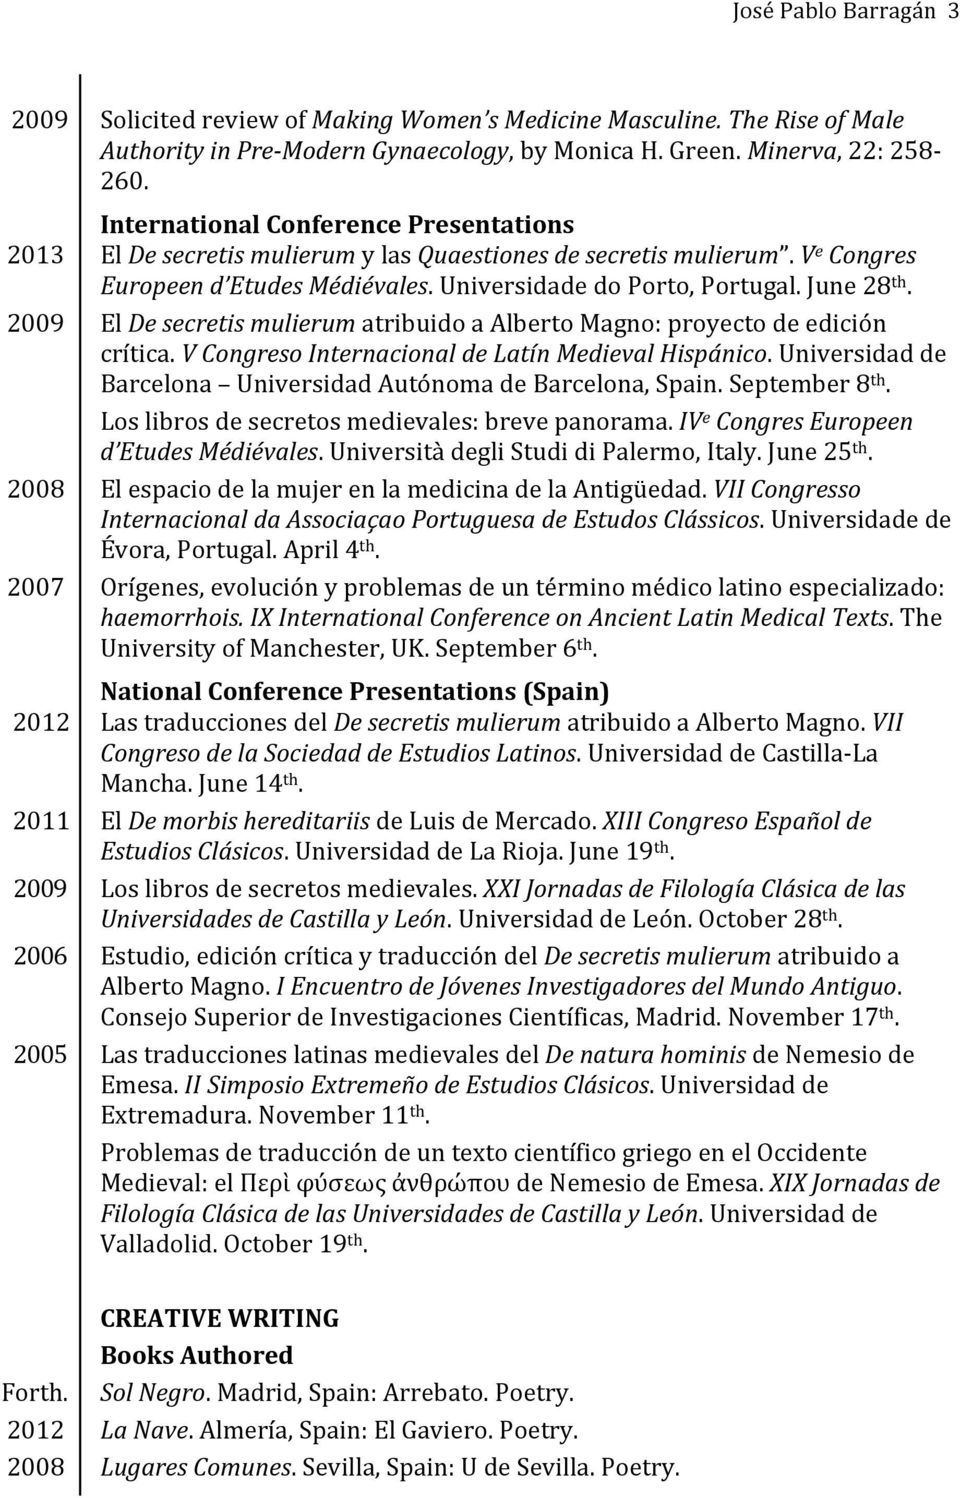 2009 El De secretis mulierum atribuido a Alberto Magno: proyecto de edición crítica. V Congreso Internacional de Latín Medieval Hispánico.